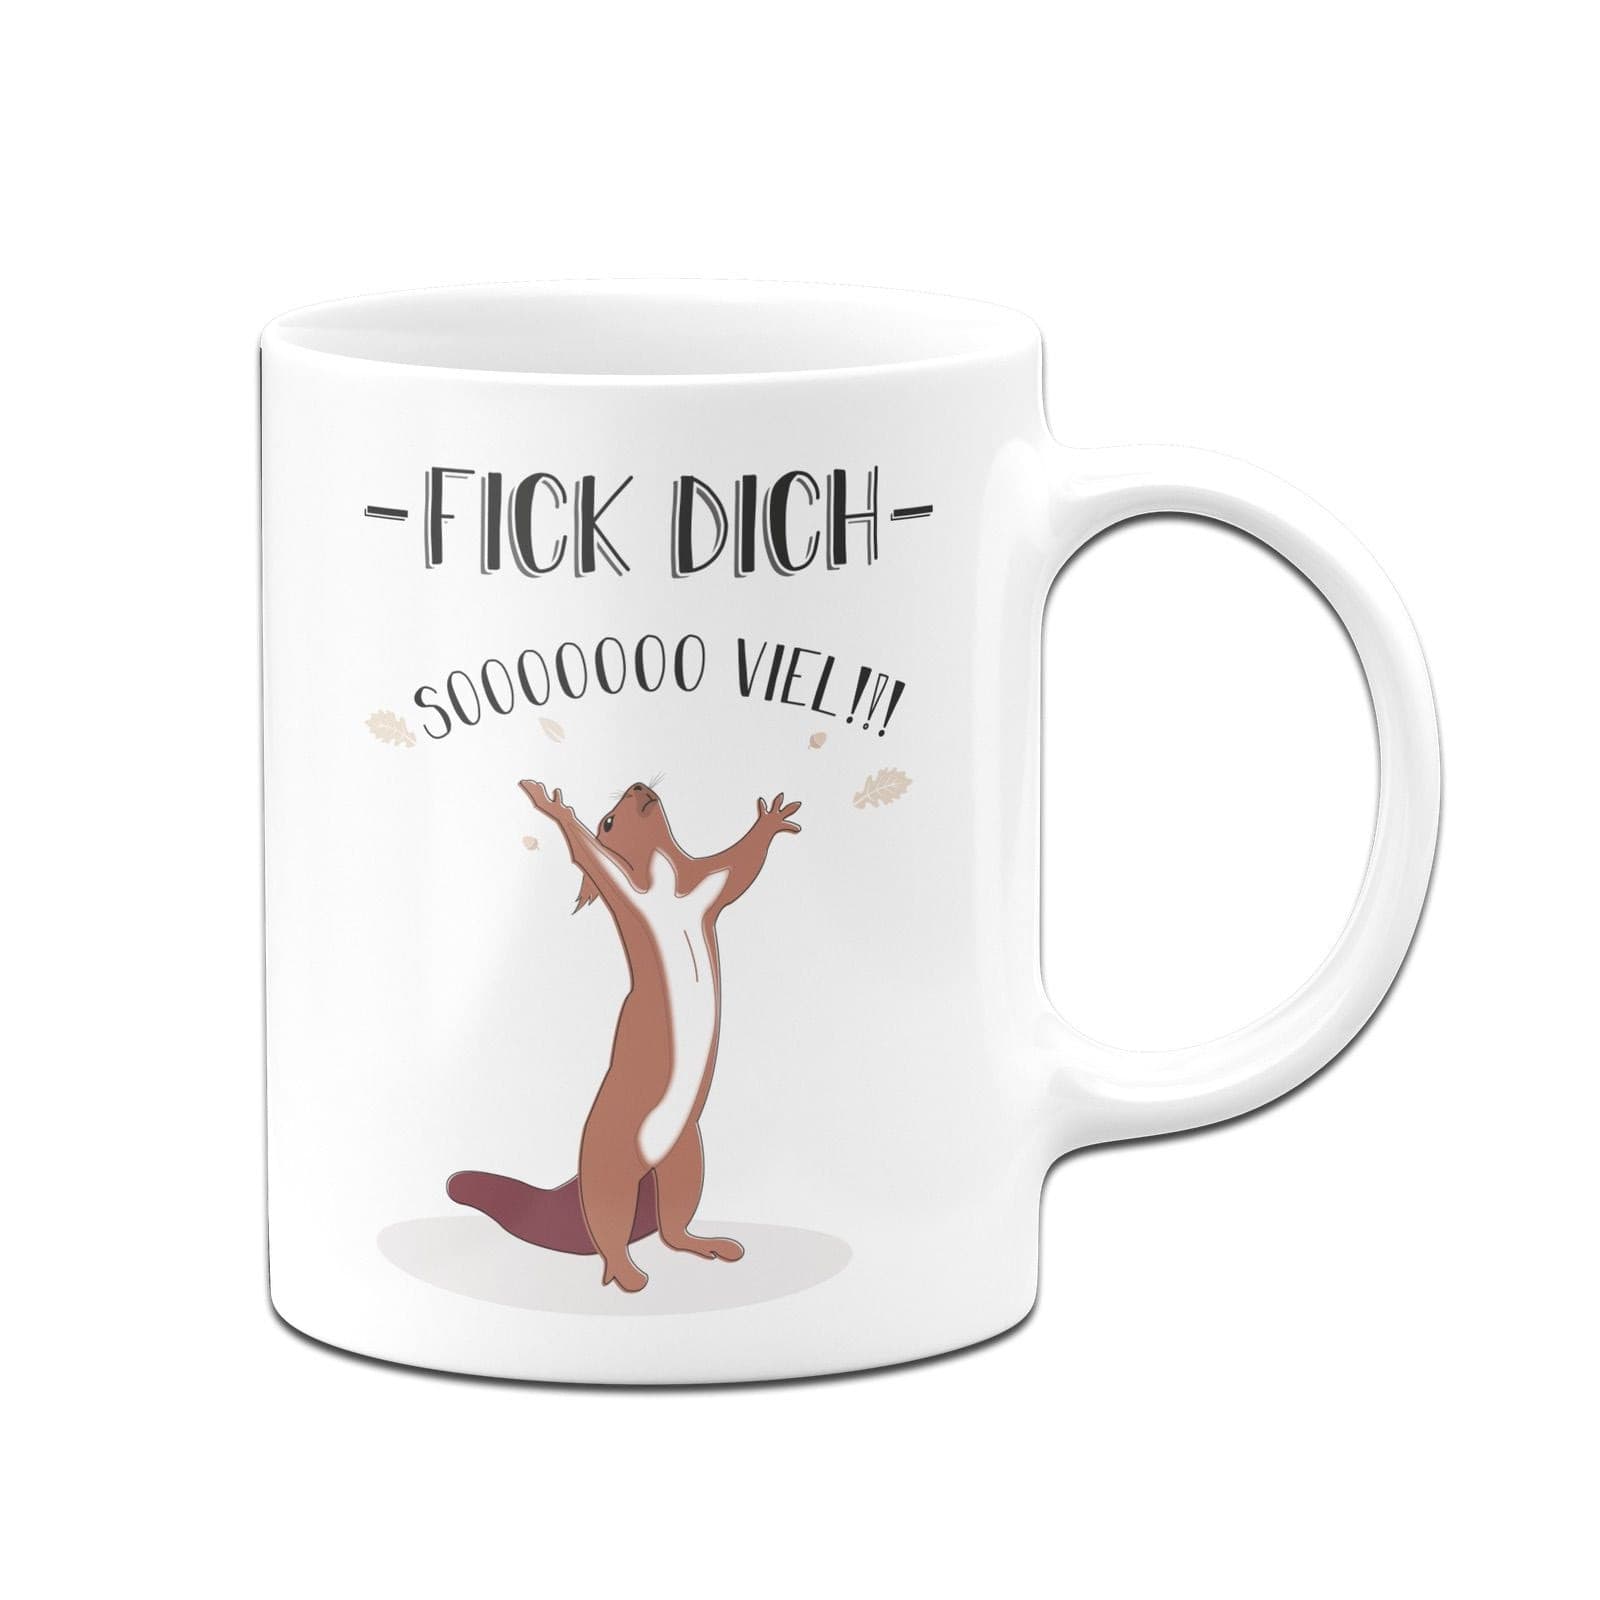 Eichhörnchen Tasse Fick Dich So Viel Tassenbrennerei 